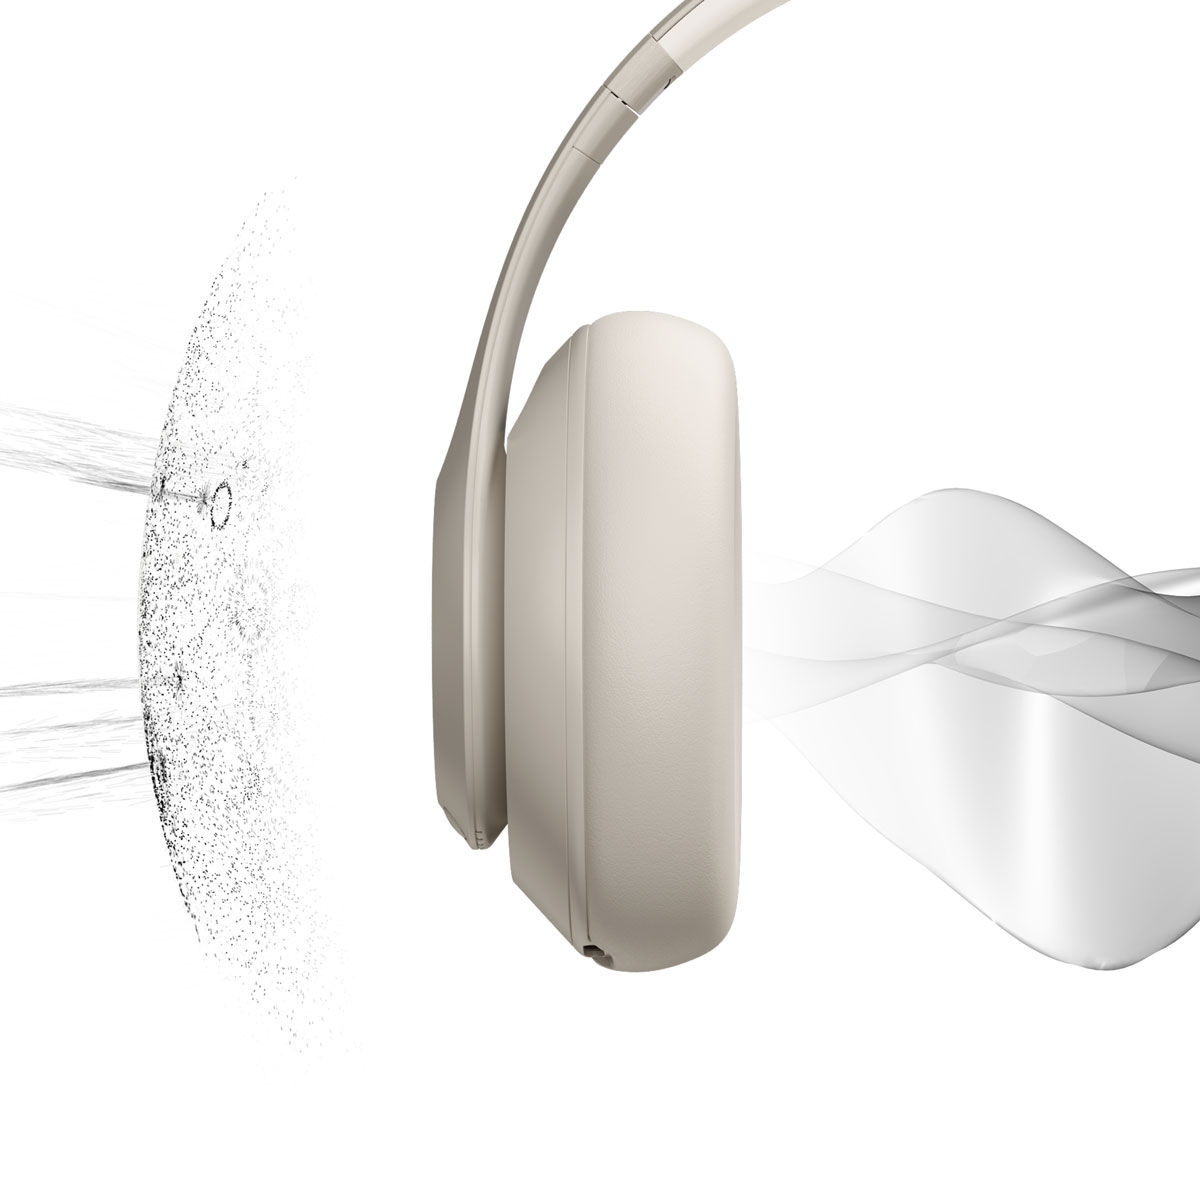 Beats Studio Pro - Premium Wireless Noise Cancelling Headphones